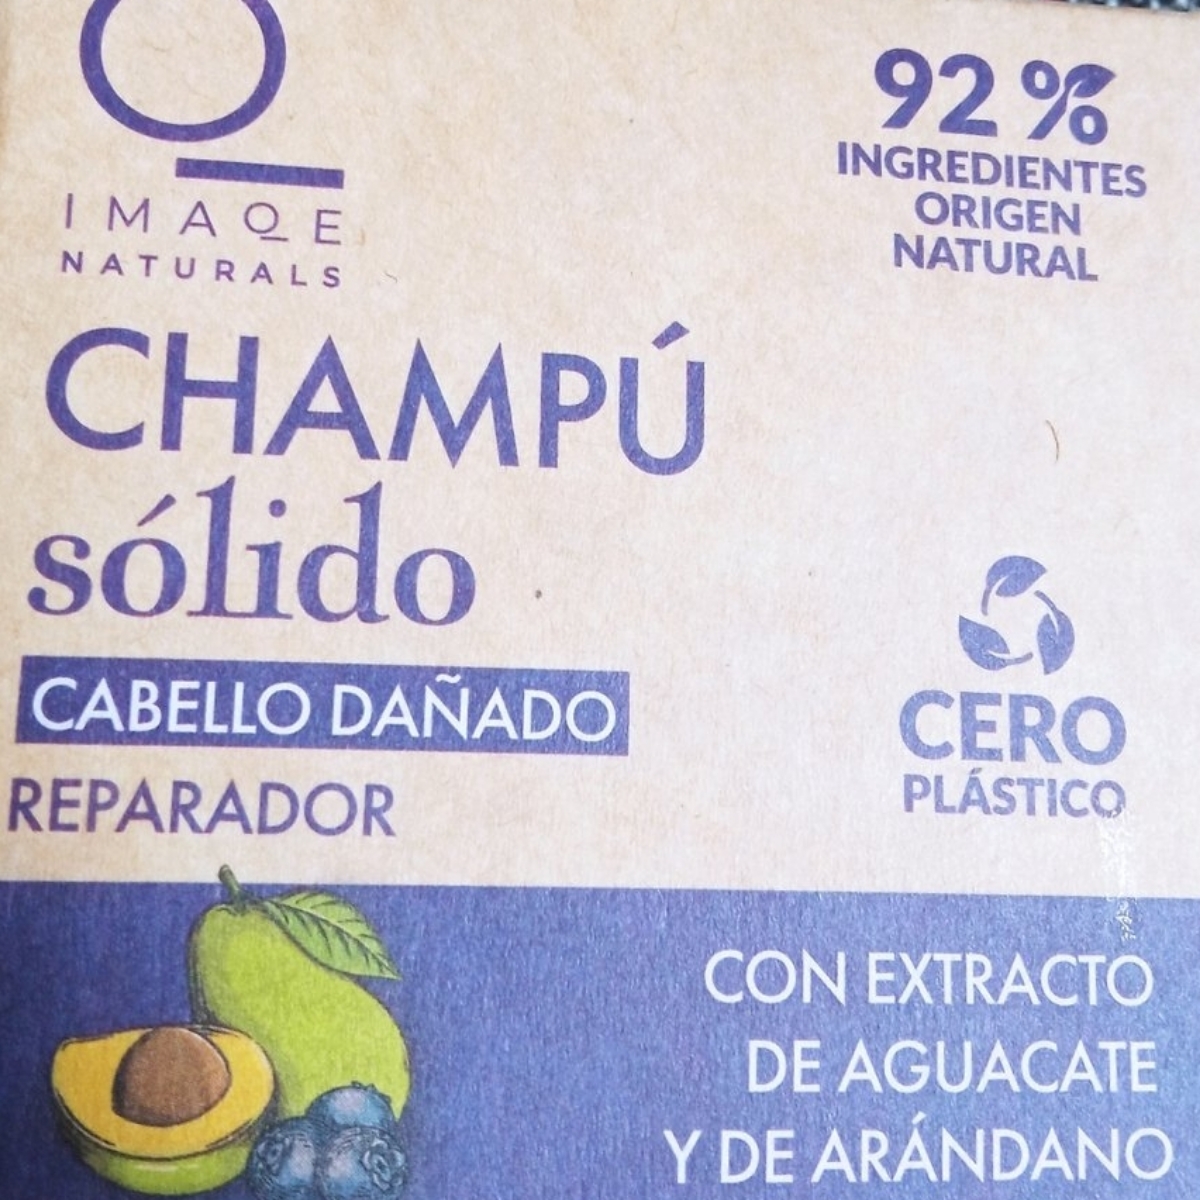 Imaqe Naturals Champú sólido cabello dañado Reviews | abillion